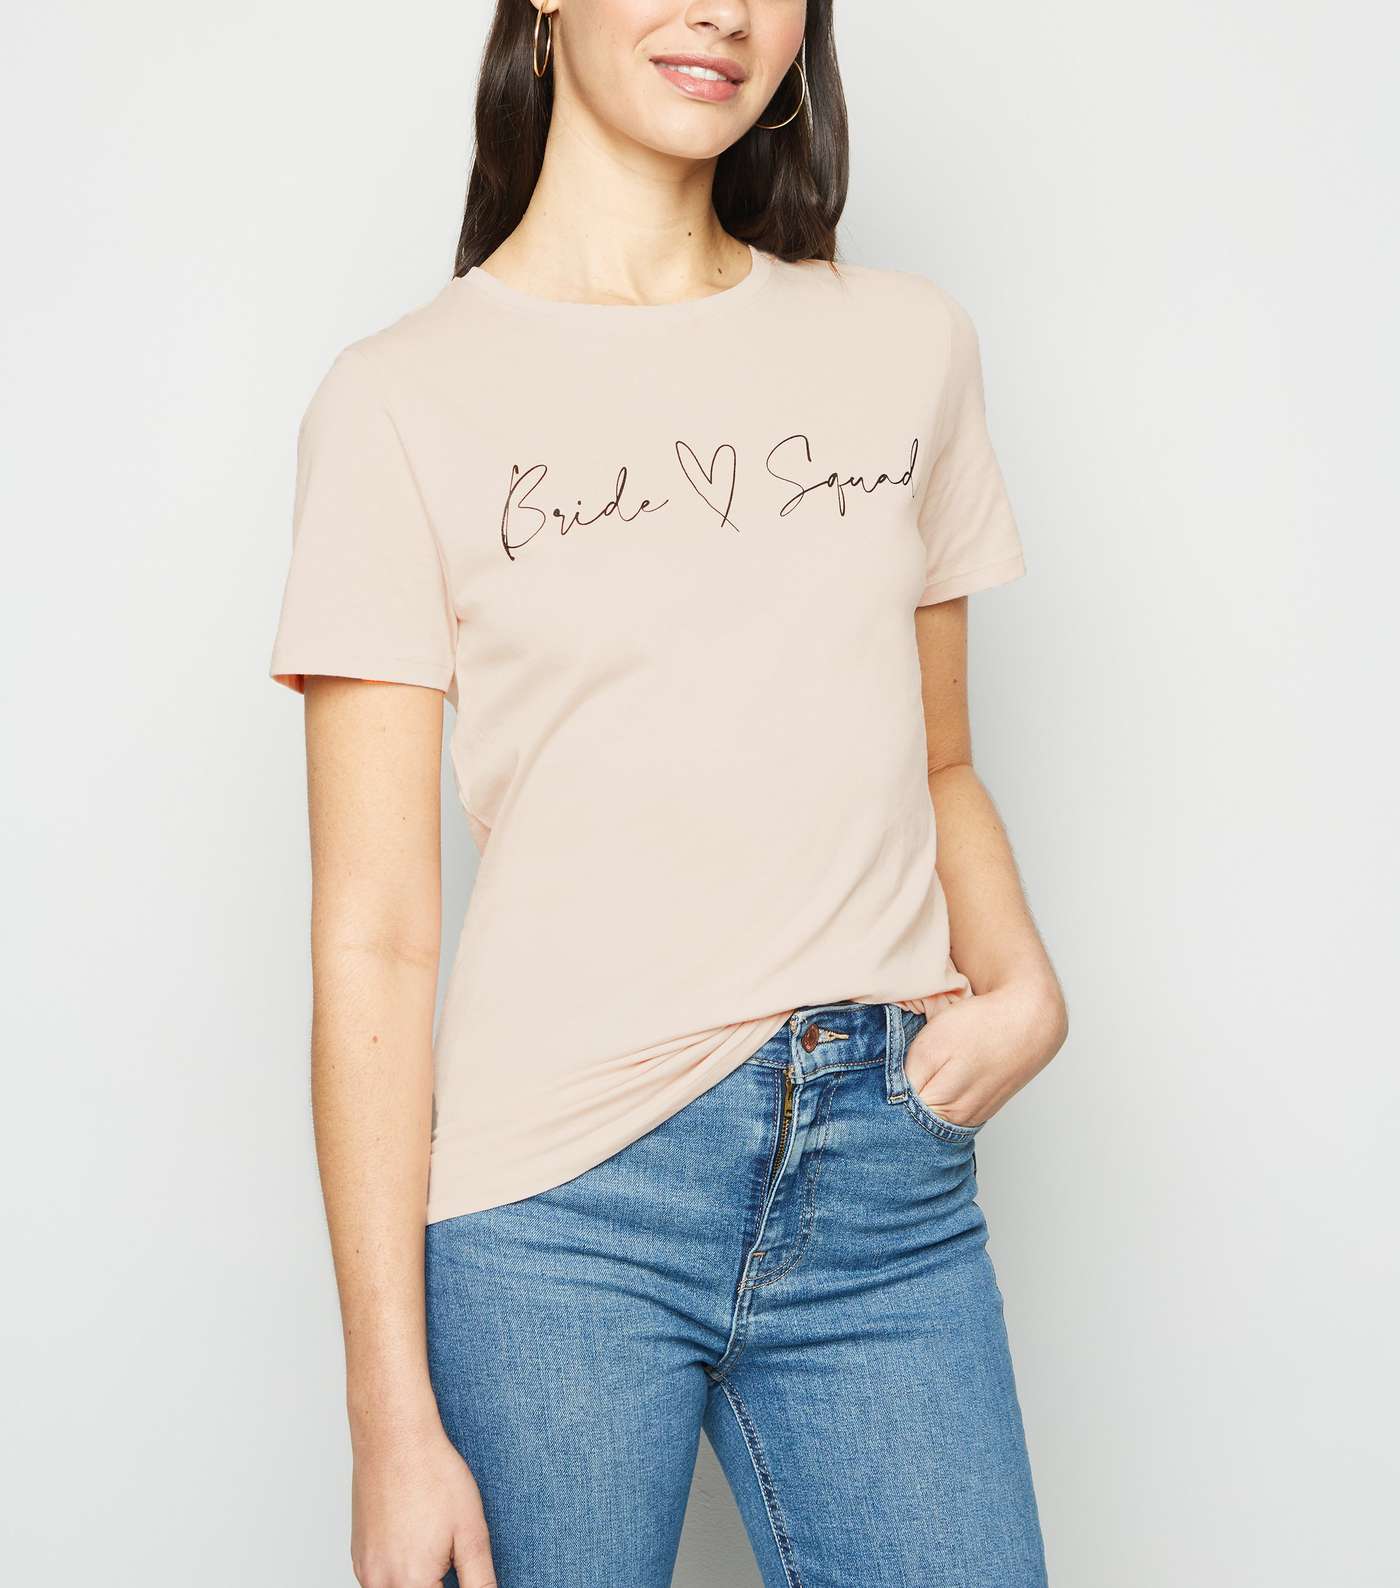 Pale Pink Bride Squad Slogan T-Shirt